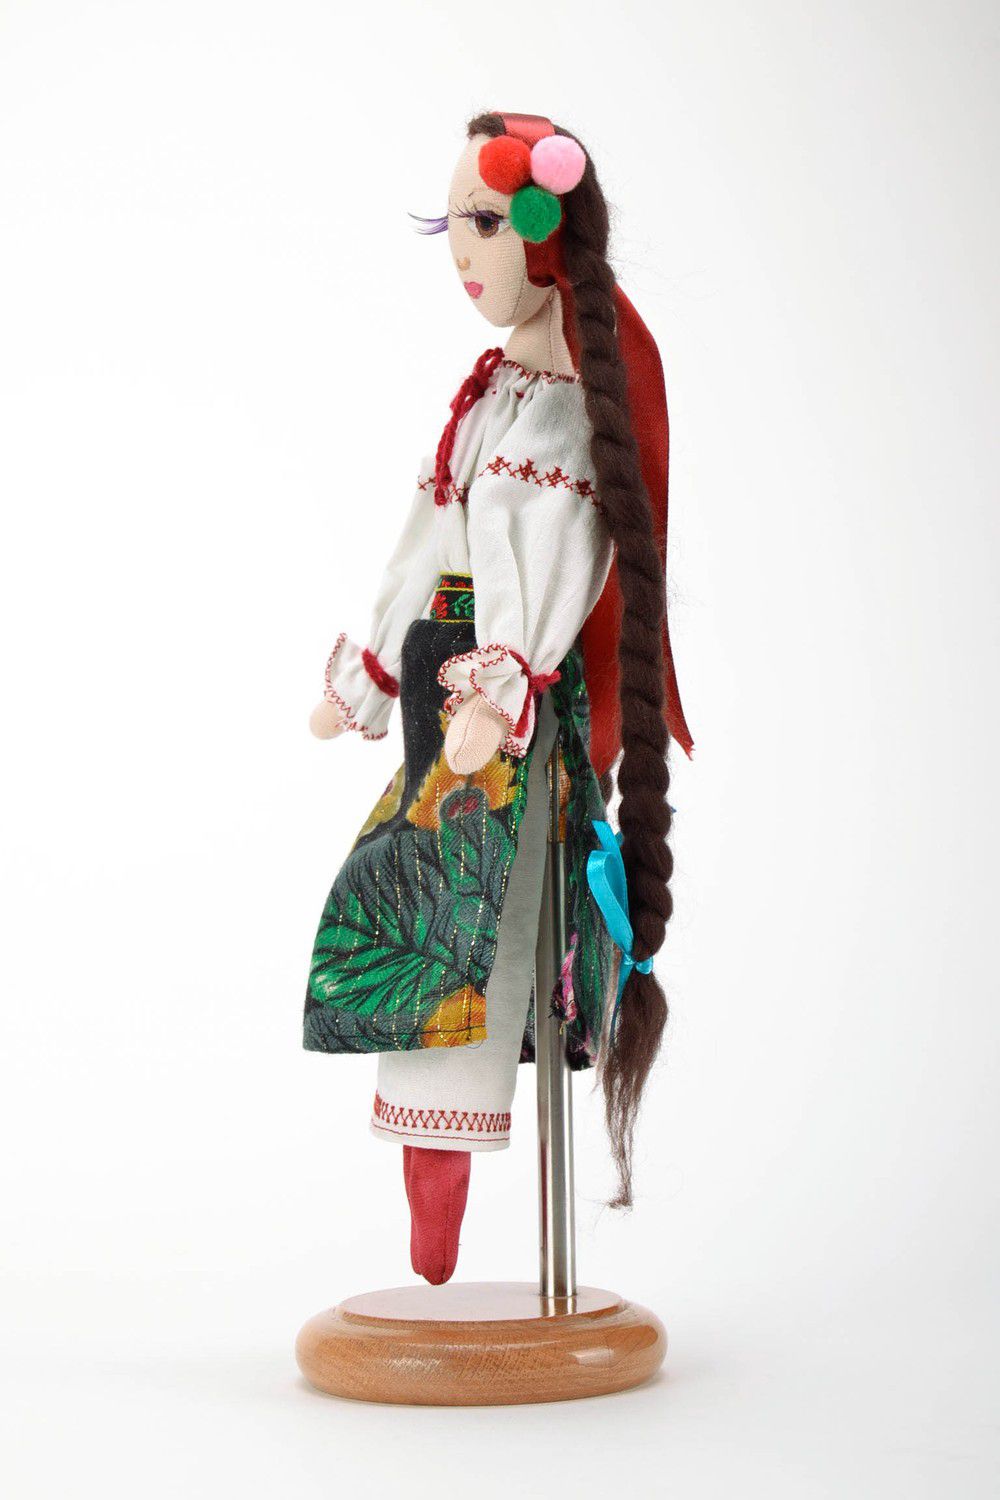 Textil Puppe auf der Stütze Ukrainerin foto 4